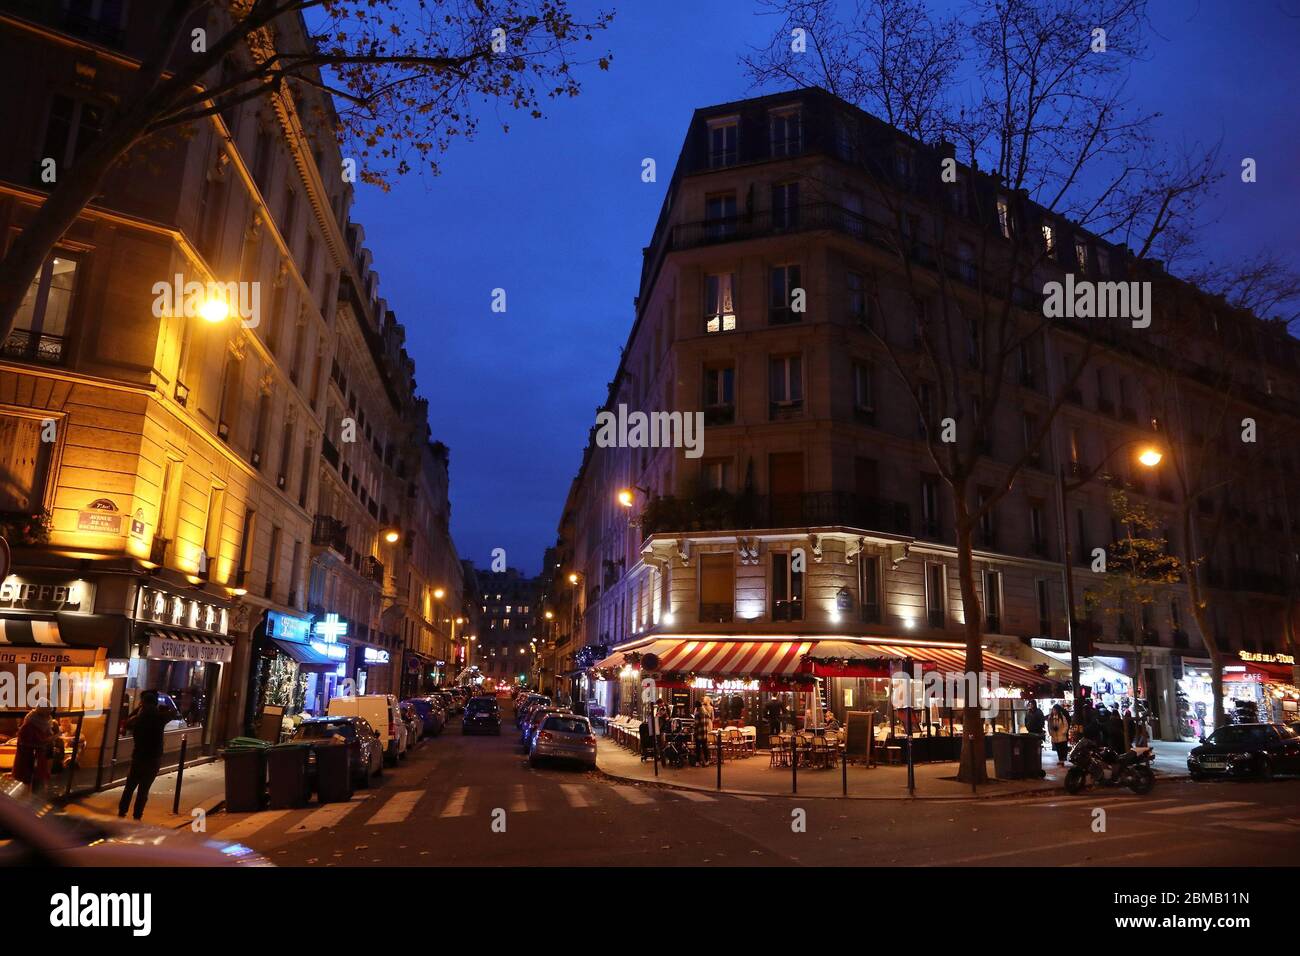 PARIGI, FRANCIA - 10 DICEMBRE 2019: Ristoranti tipici locali nel 7° arrondissement di Parigi, Francia. Parigi è la città più grande della Francia, con 12.5 km circa Foto Stock